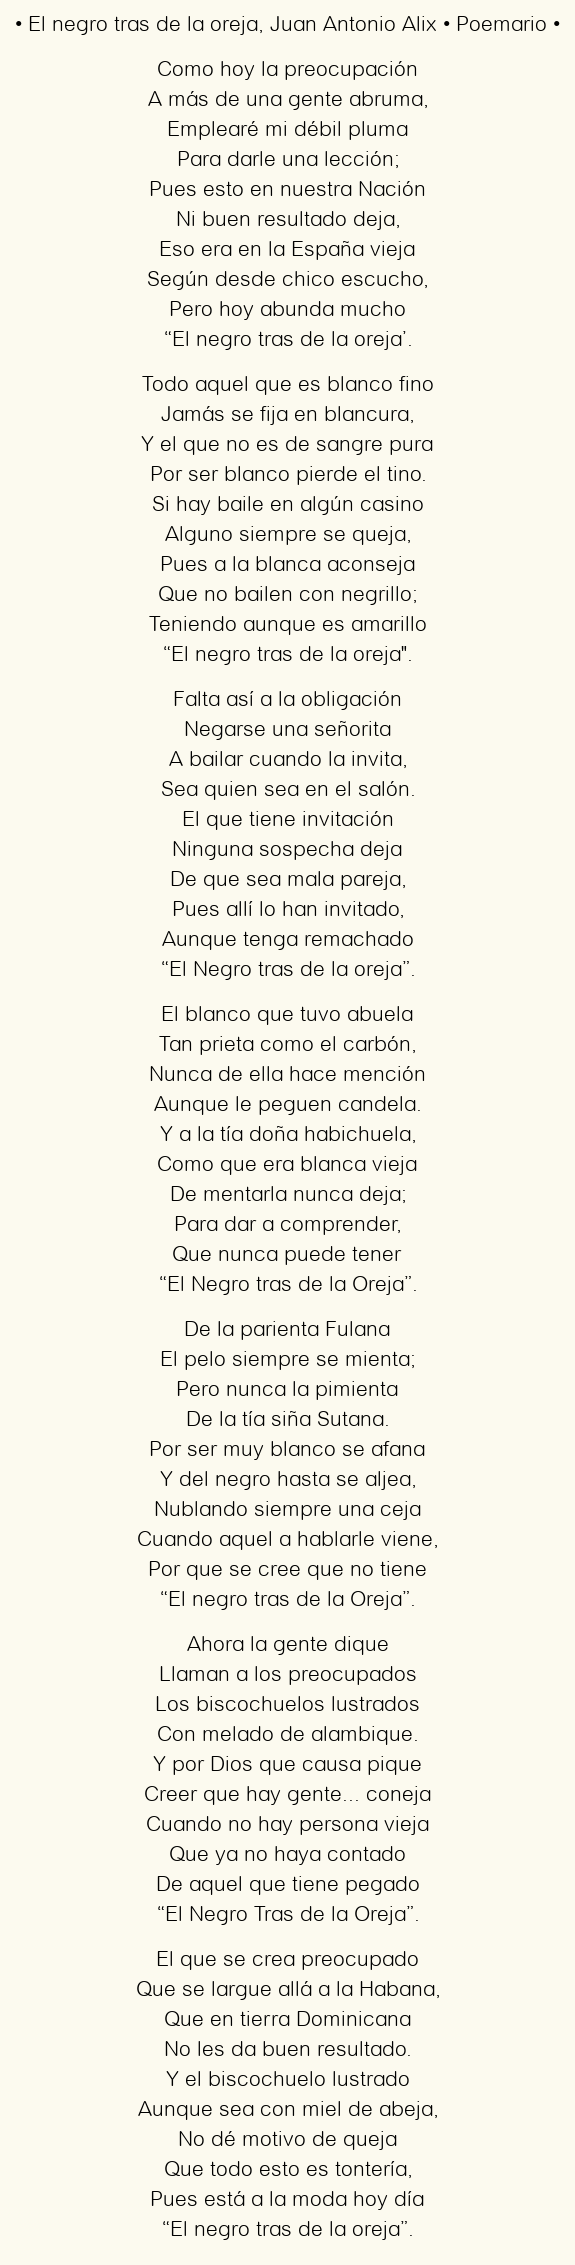 Imagen con el poema El negro tras de la oreja, por Juan Antonio Alix